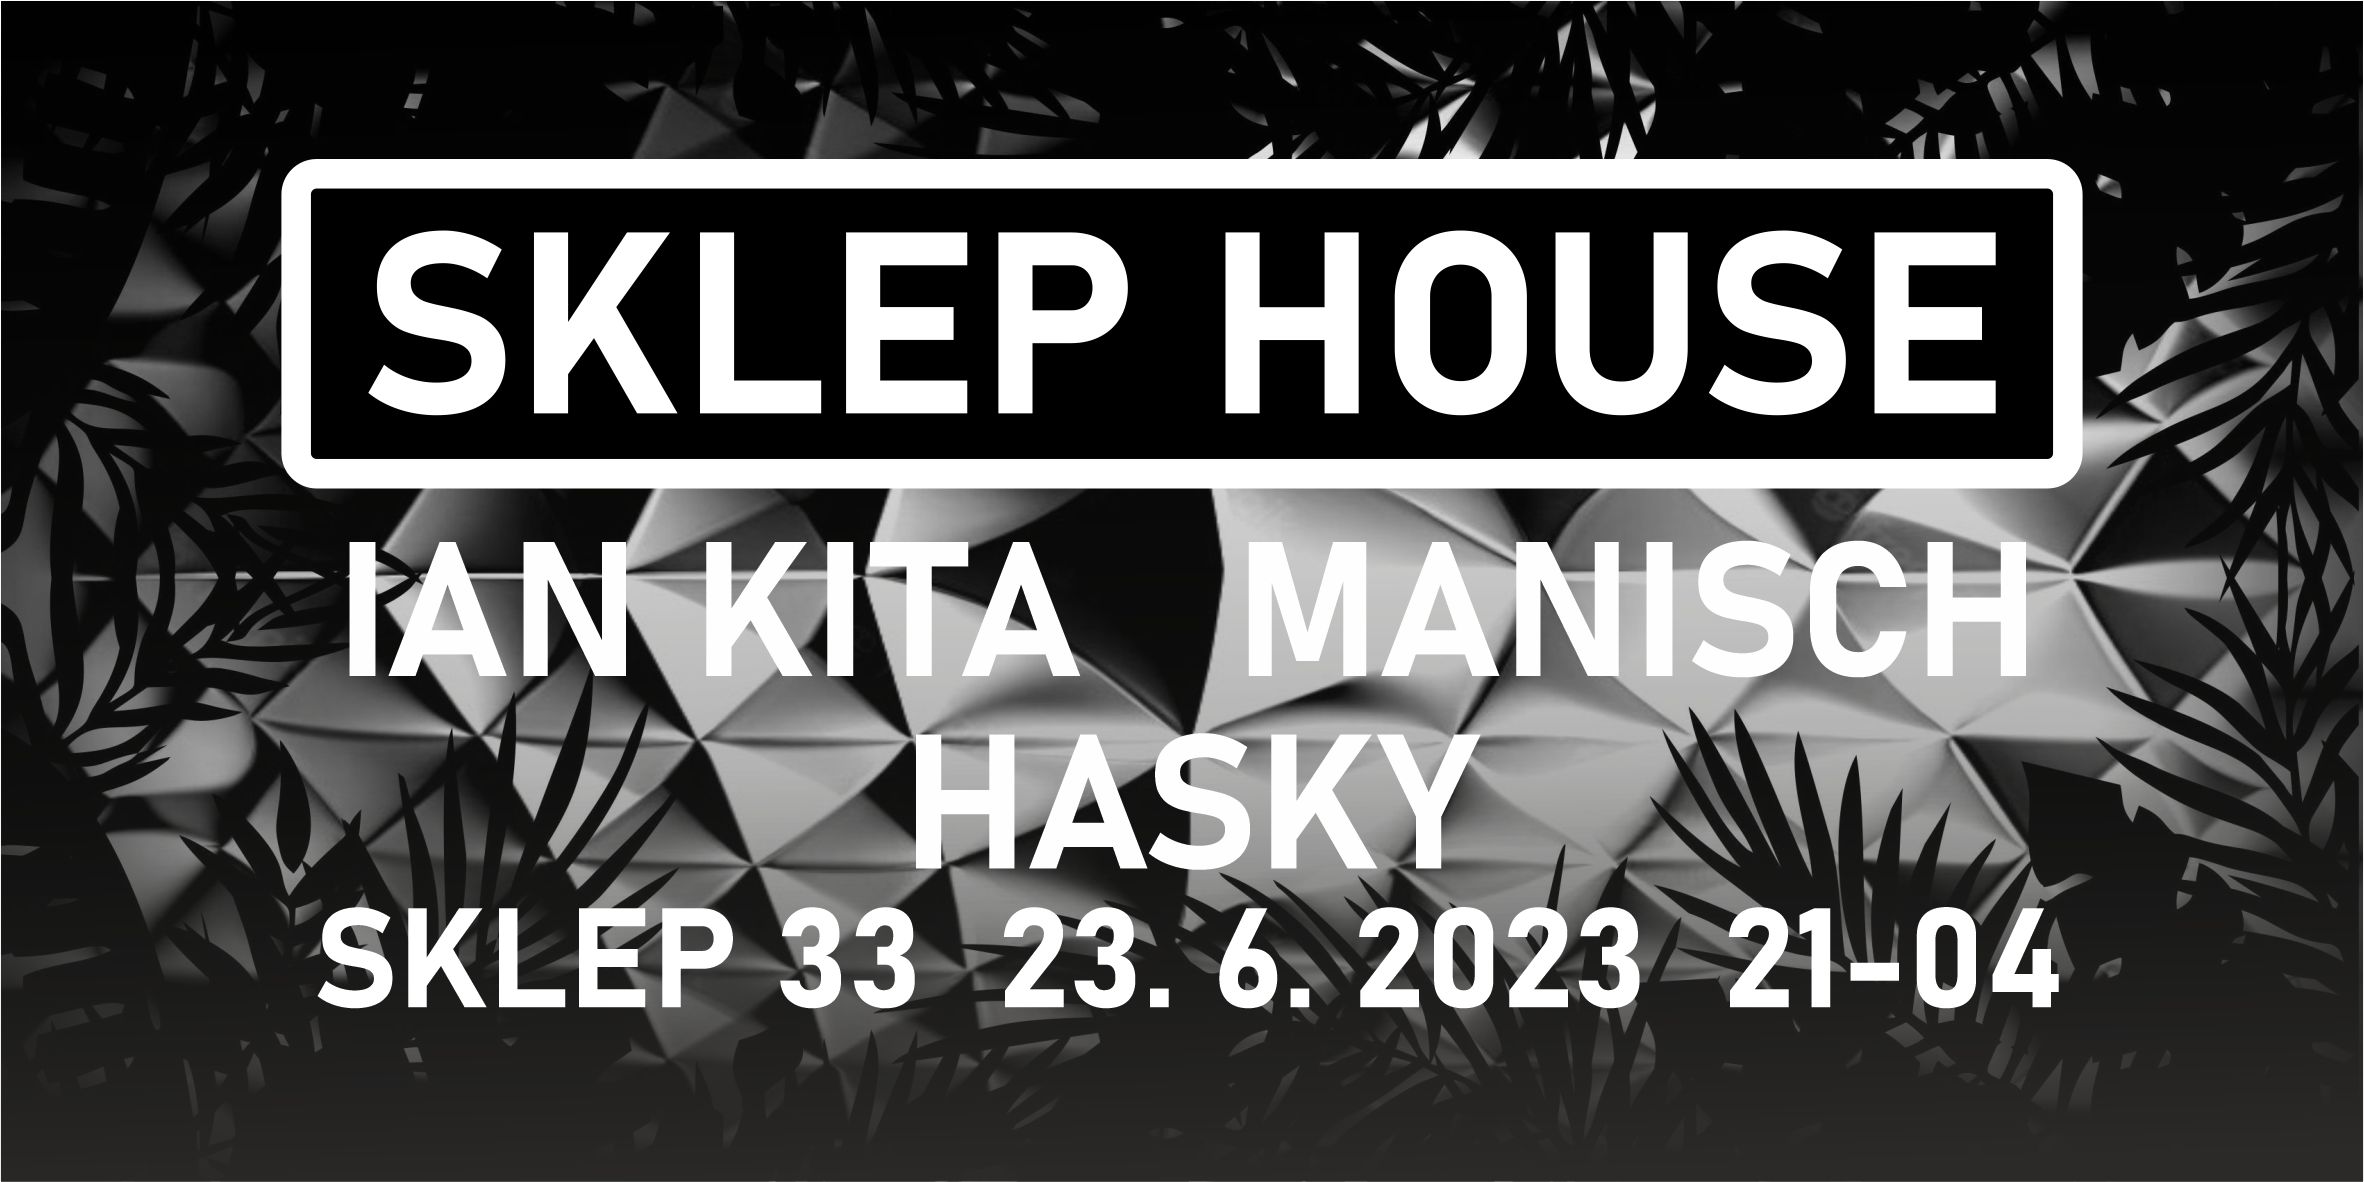 SKLEP HOUSE with Hasky